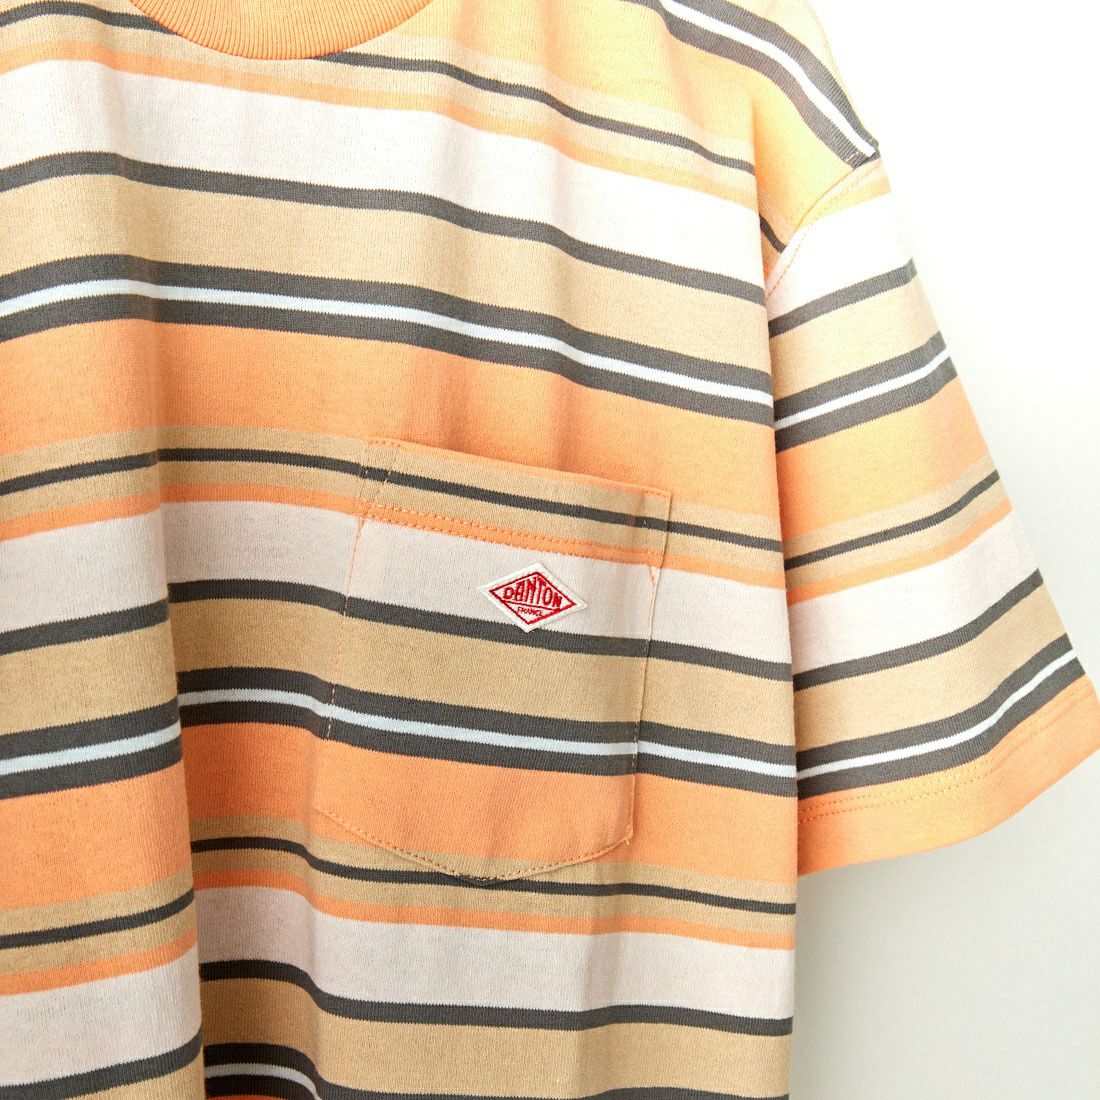 DANTON [ダントン] ストライプ ポケットTシャツ [DT-C0197TCB] PINK/BEIGE